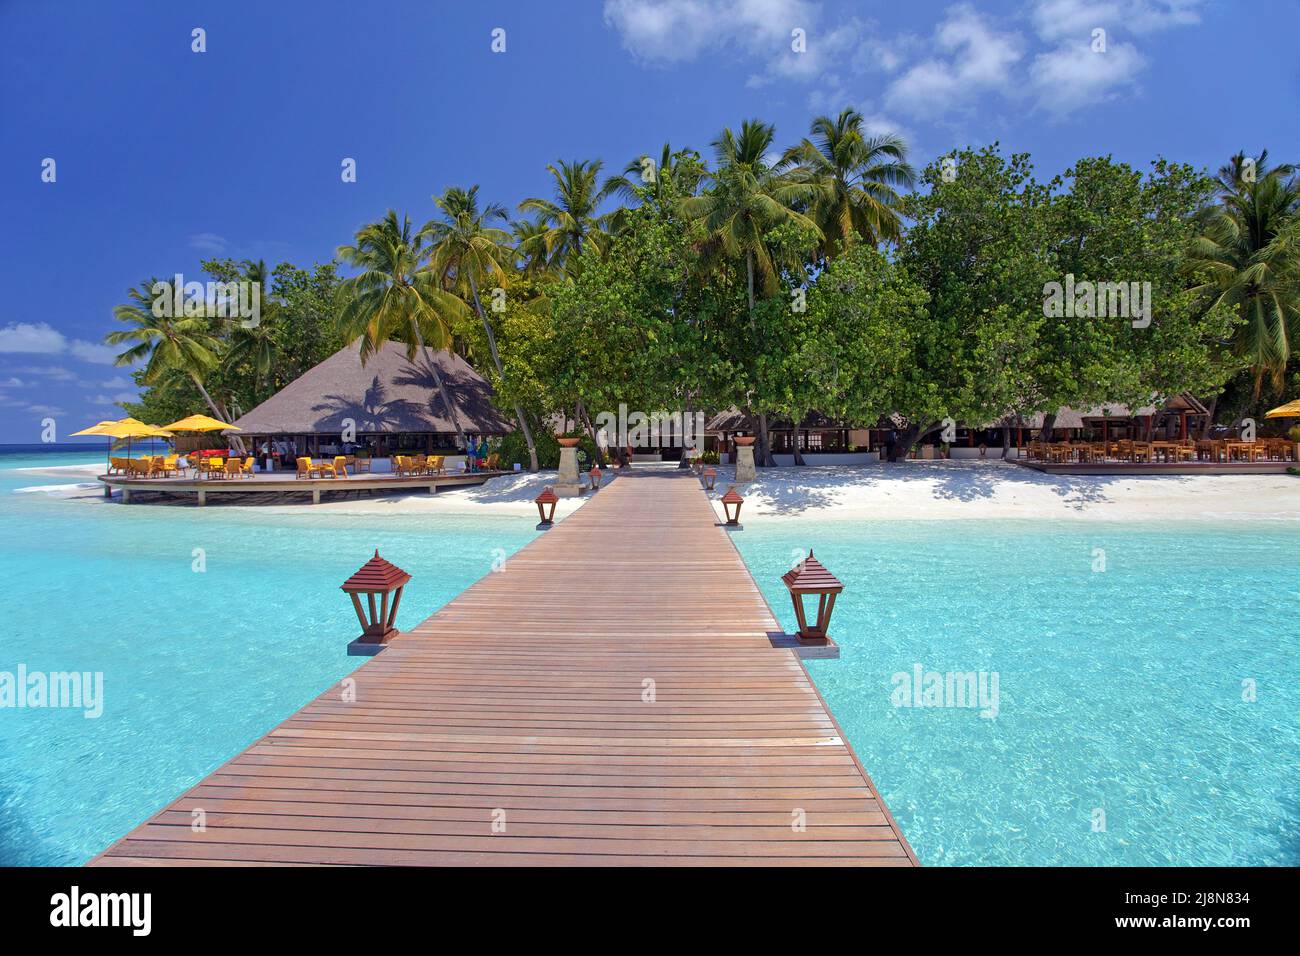 Jetty mène à la station balnéaire de luxe Angsana, ancienne île d'Ihuru, North-Malé atoll, Maldives, océan Indien, Asie Banque D'Images